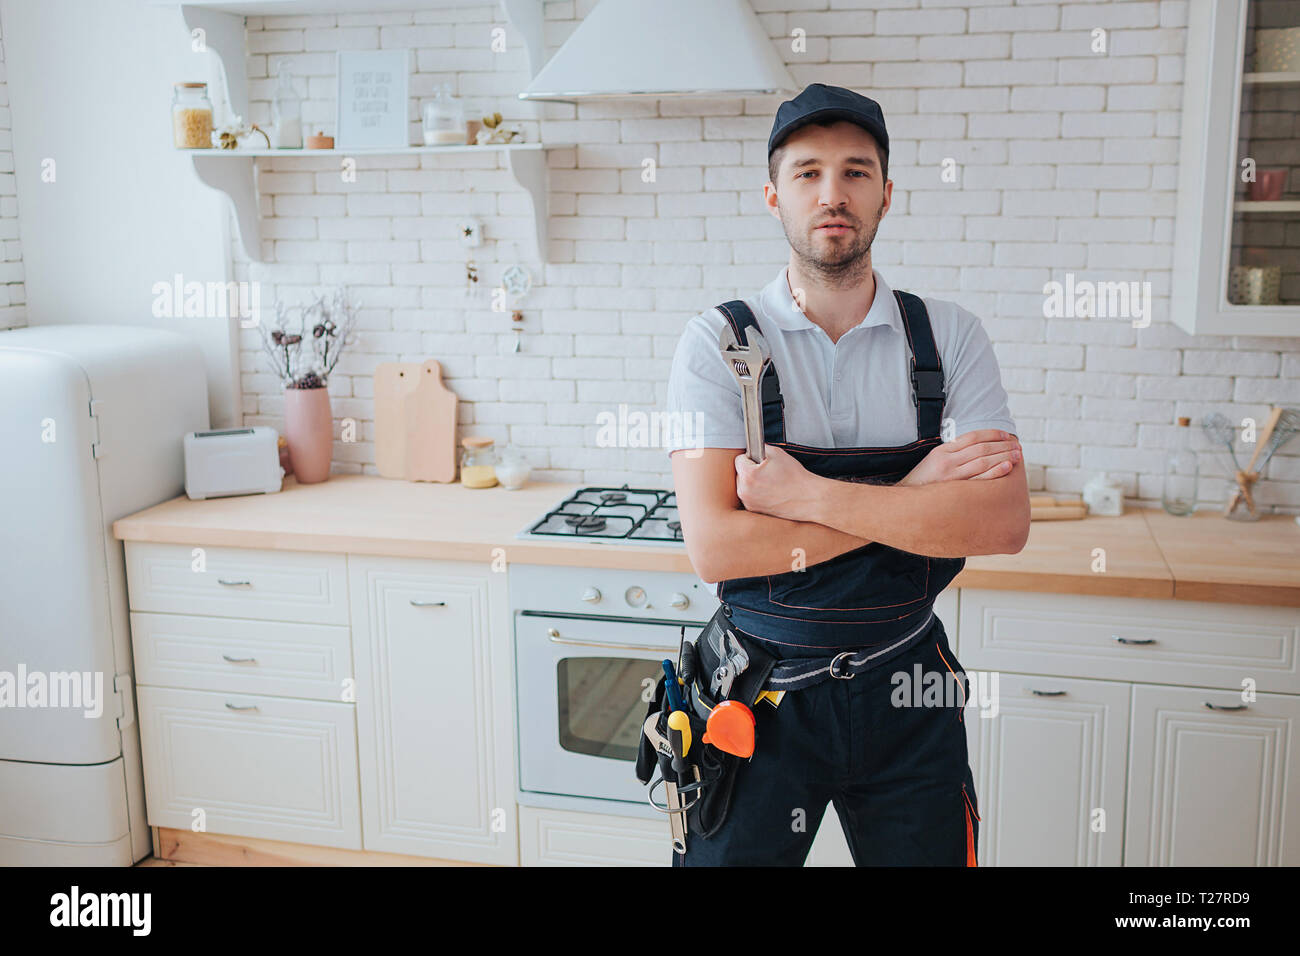 Plombier en cuisine. Un regard professionnel sur la caméra et la pose.  Mains croisées. Outils sur côté de la courroie Photo Stock - Alamy